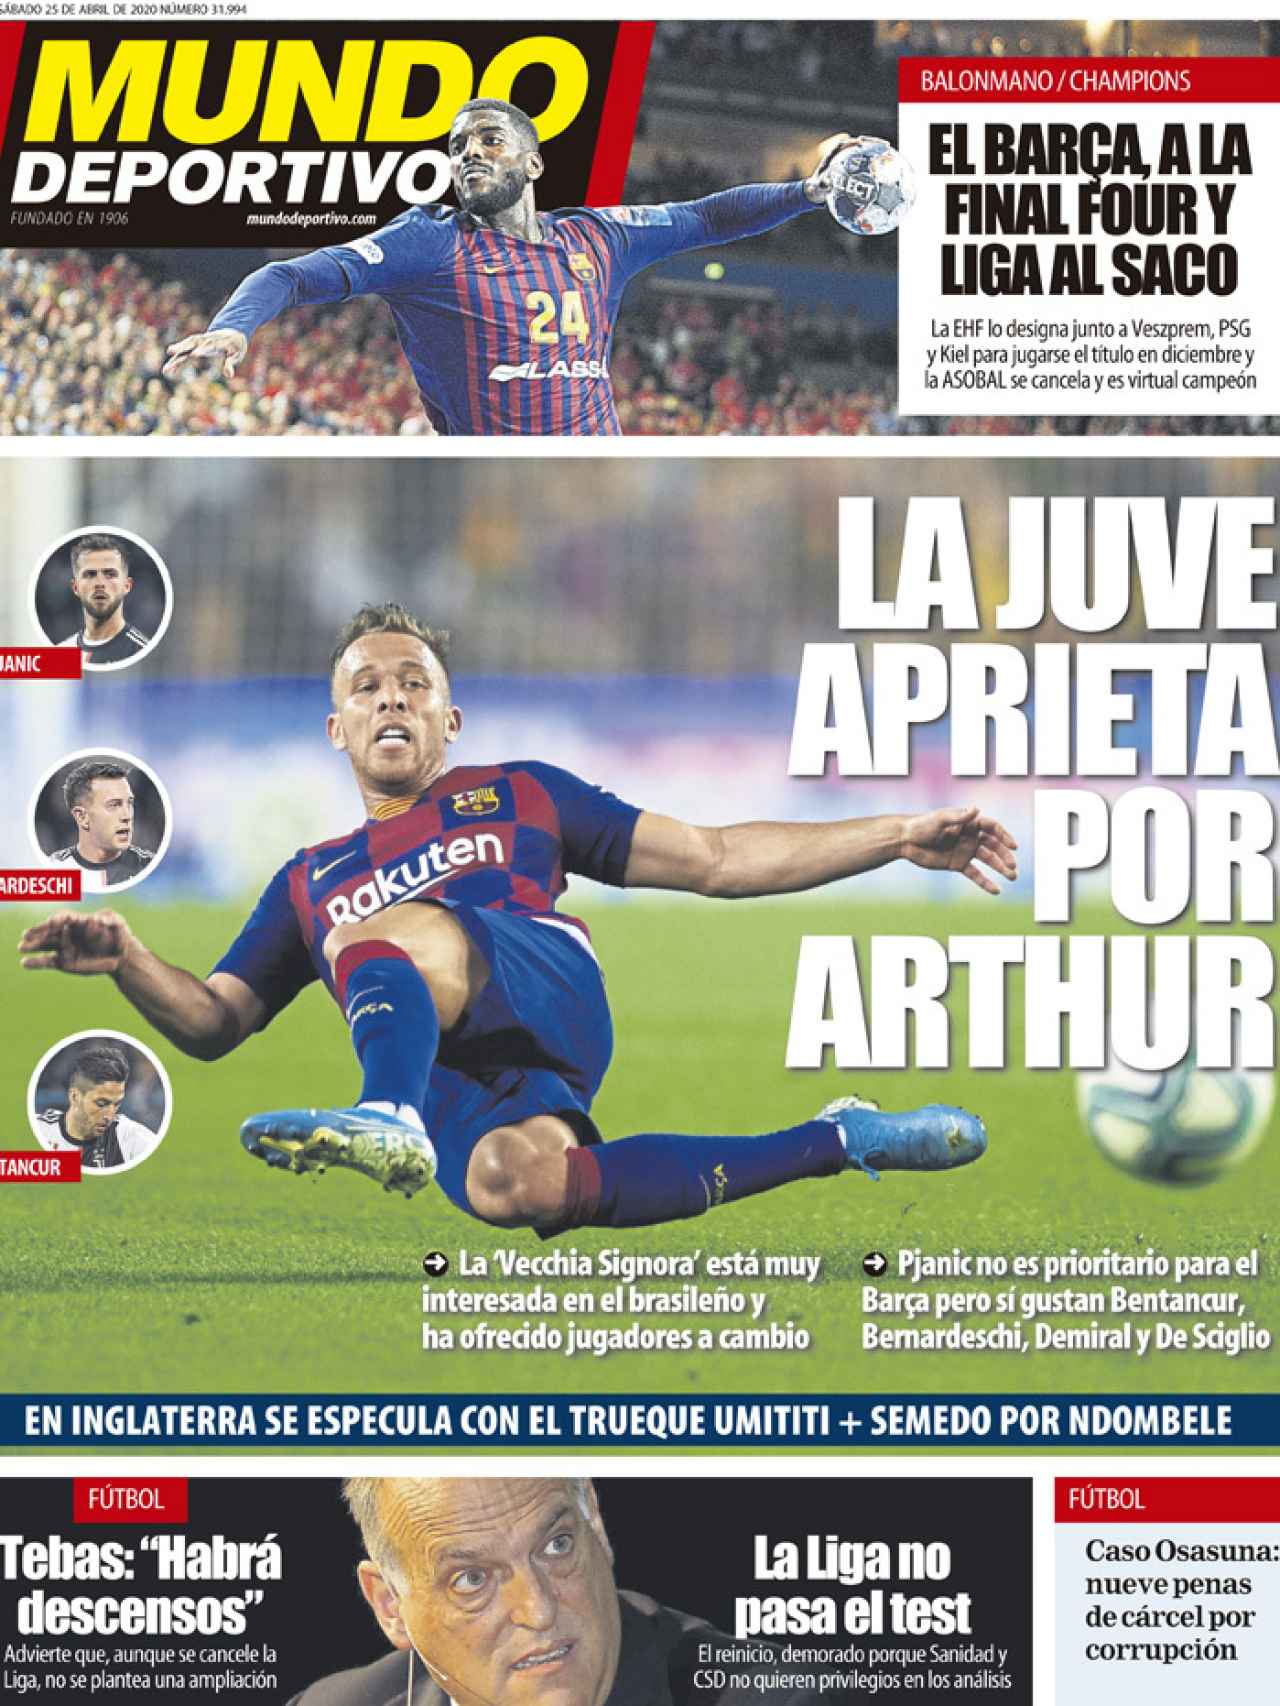 La portada del diario Mundo Deportivo (25/04/2020)